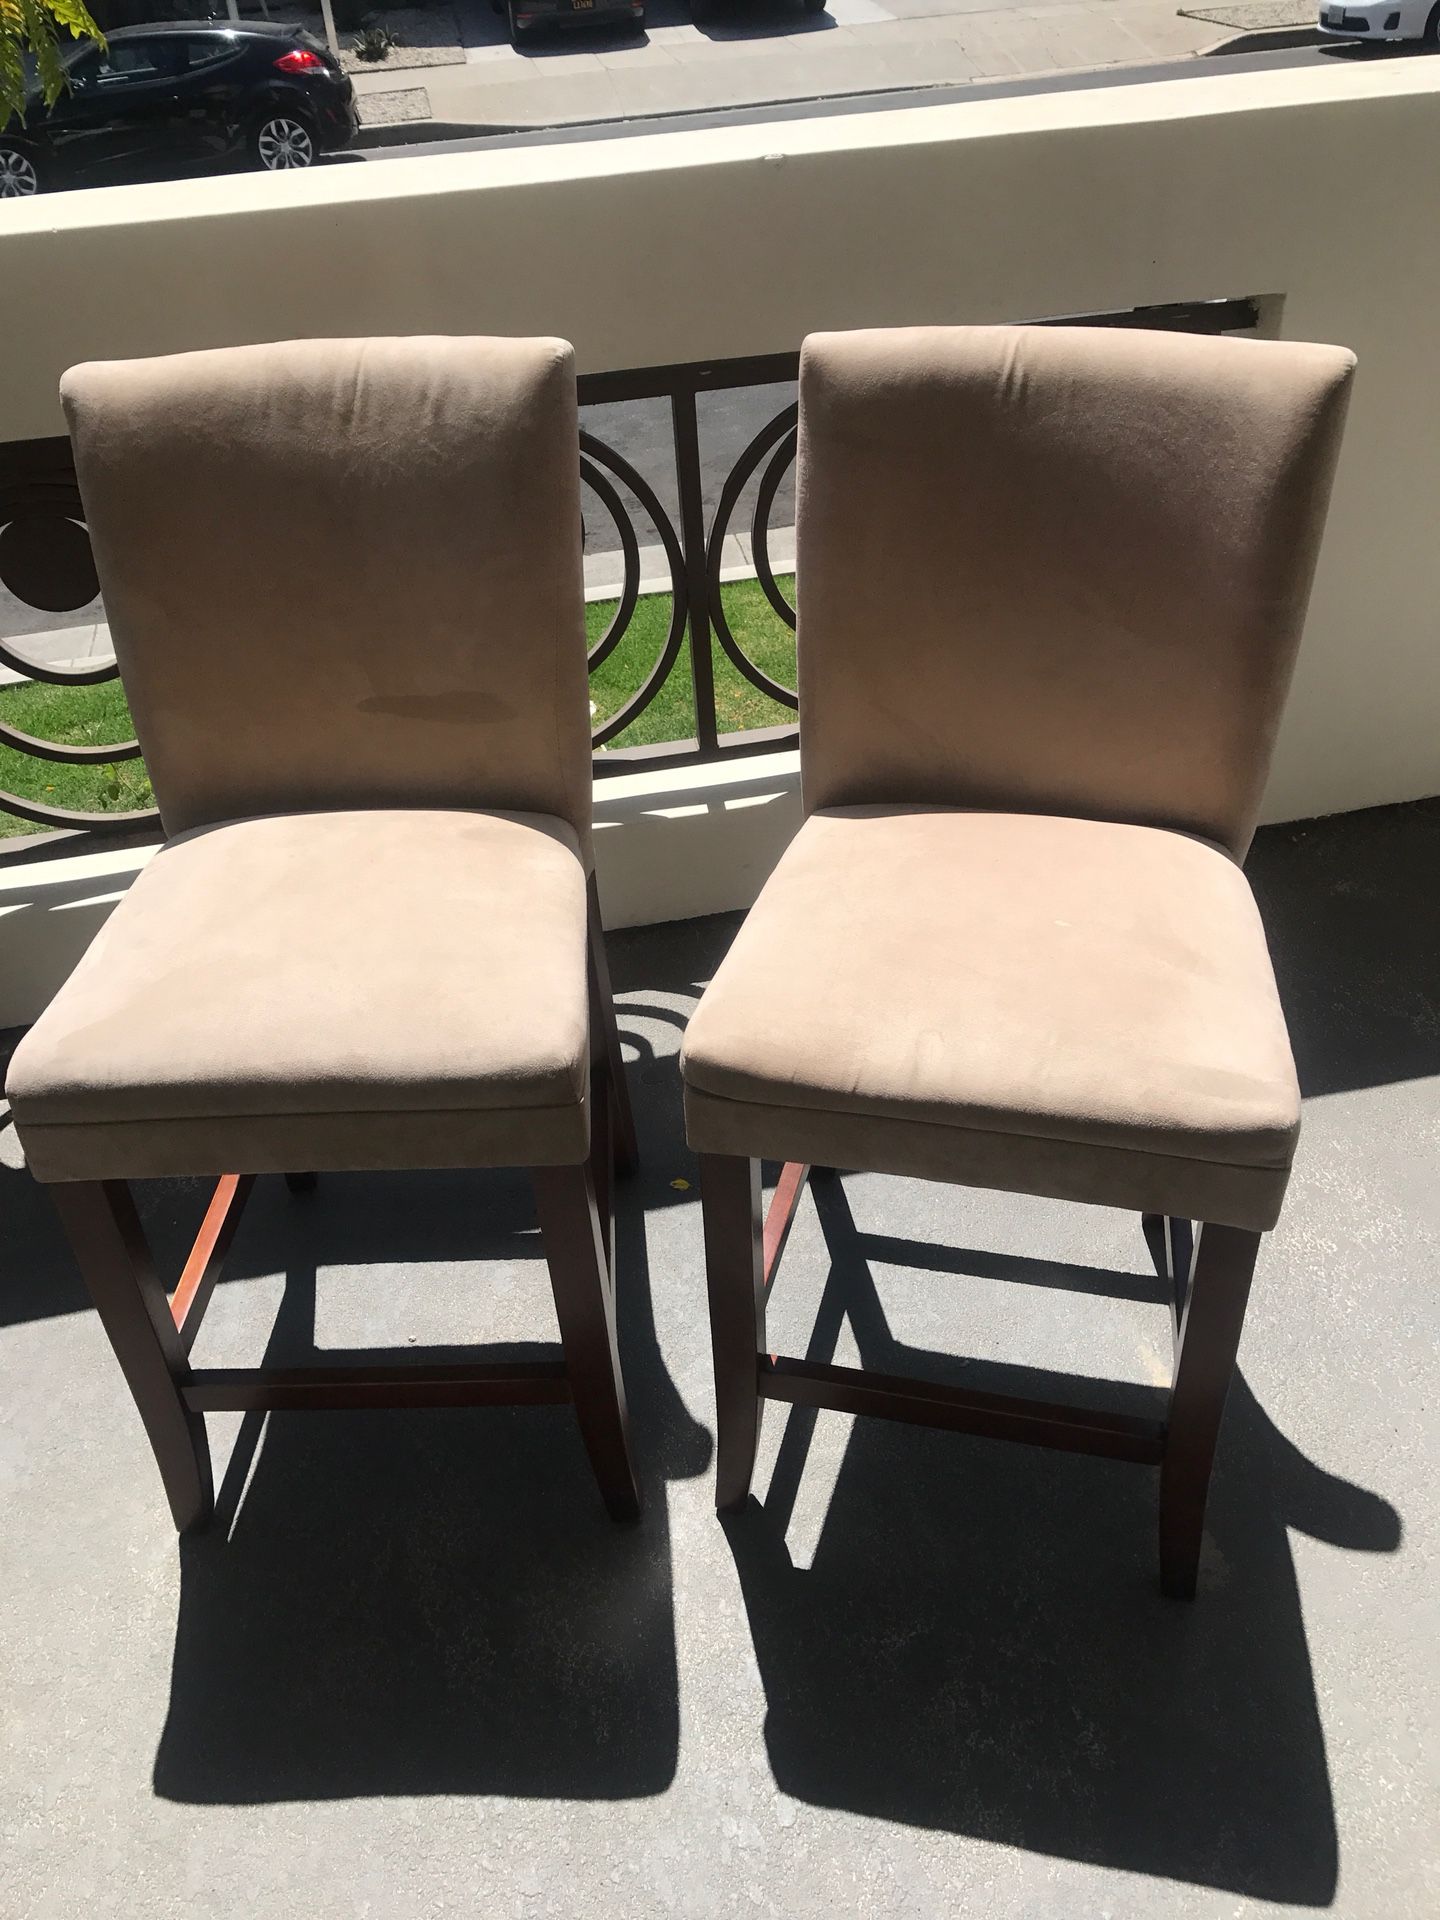 Velvet chairs